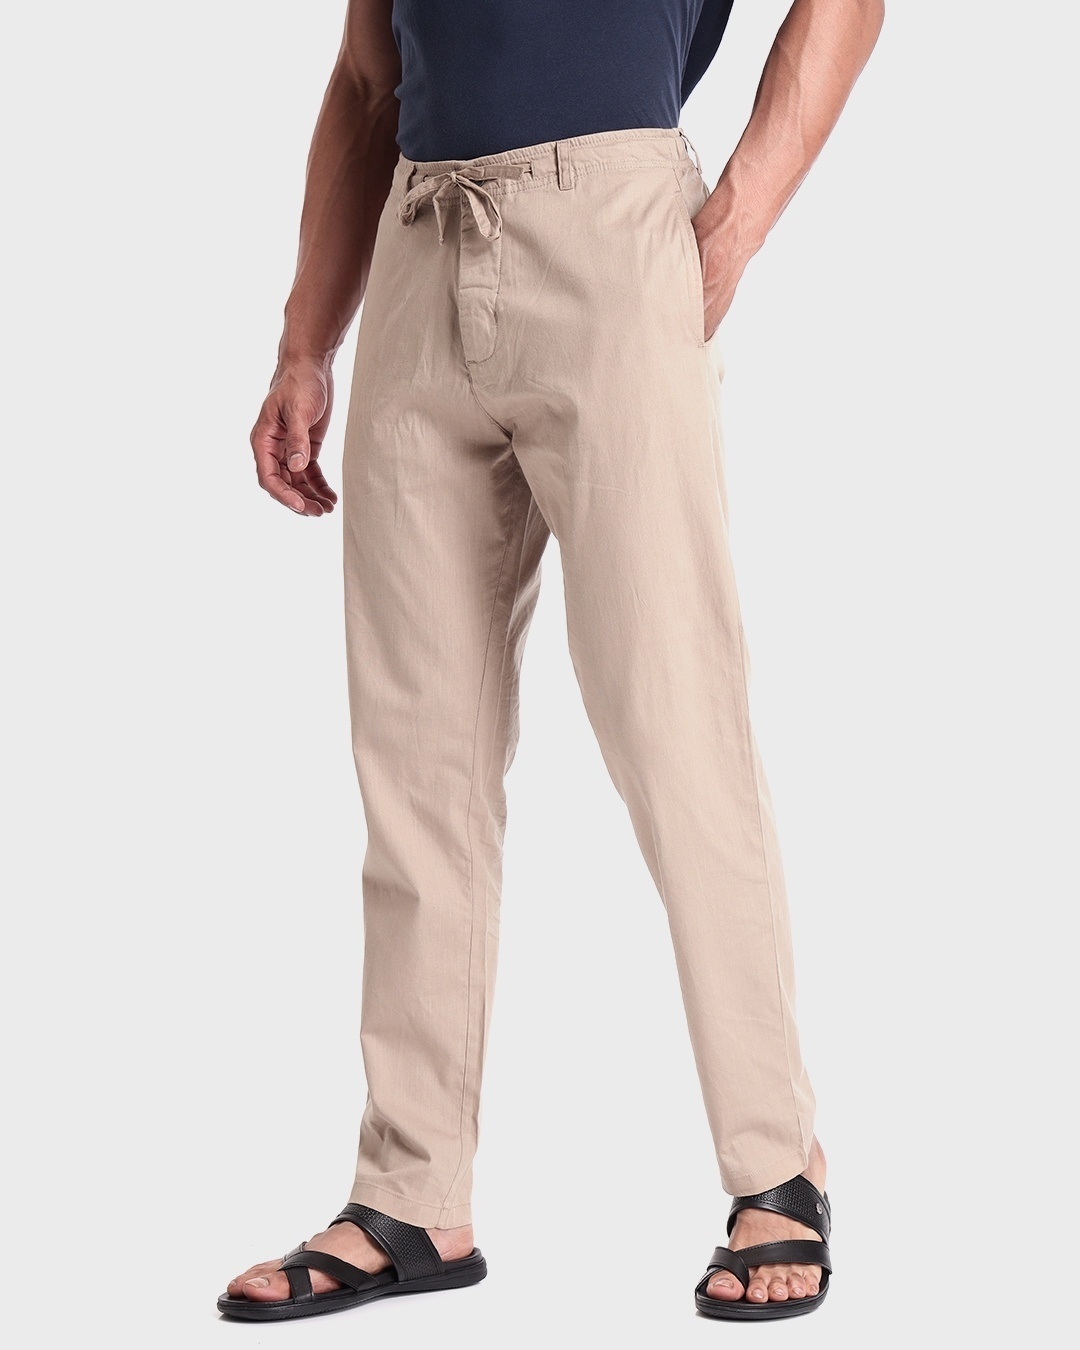 Buy Brown Trousers  Pants for Men by ECKO UNLTD Online  Ajiocom